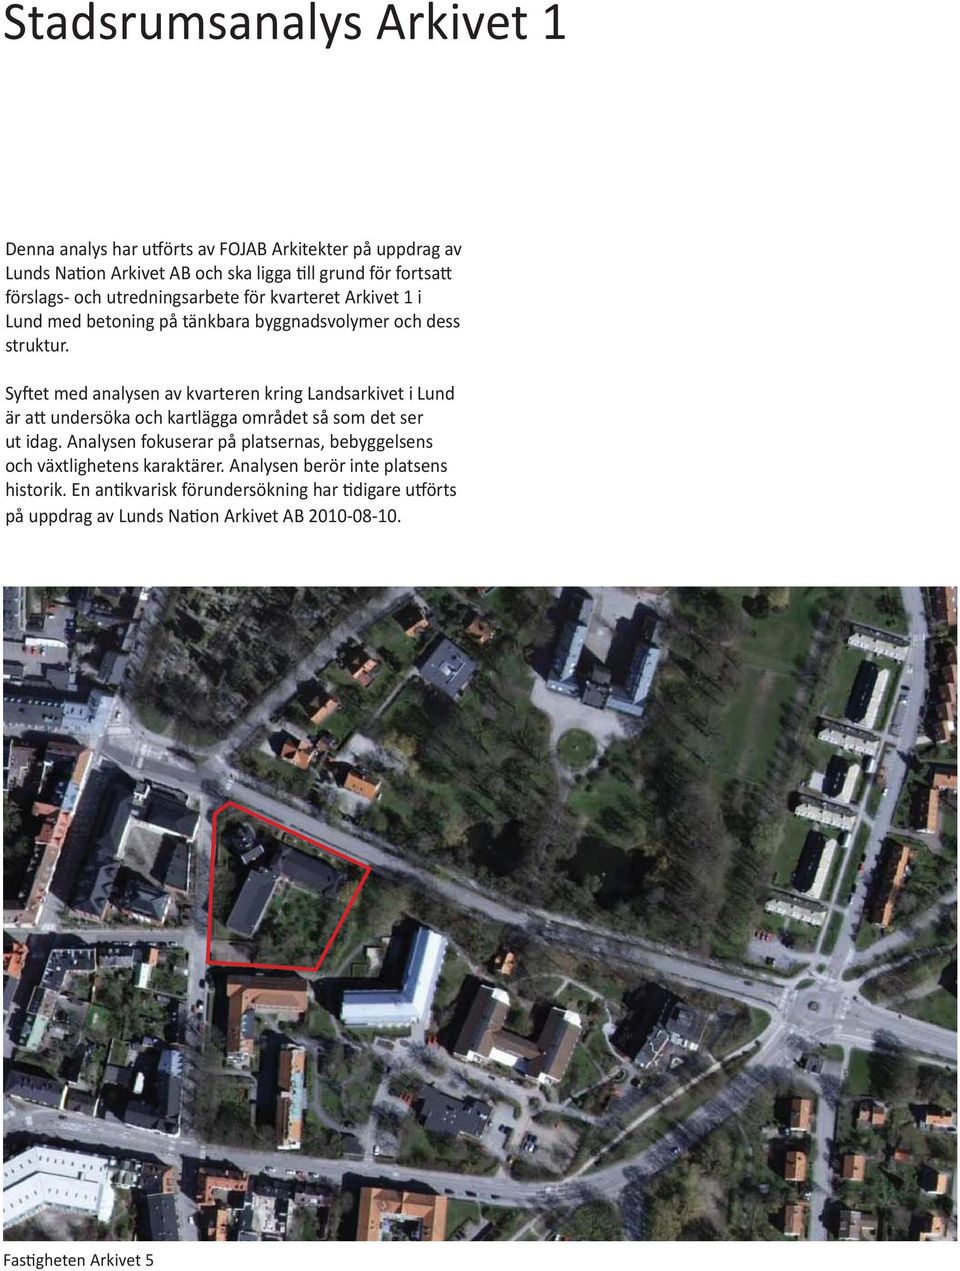 Syftet med analysen av kvarteren kring Landsarkivet i Lund är att undersöka och kartlägga området så som det ser ut idag.